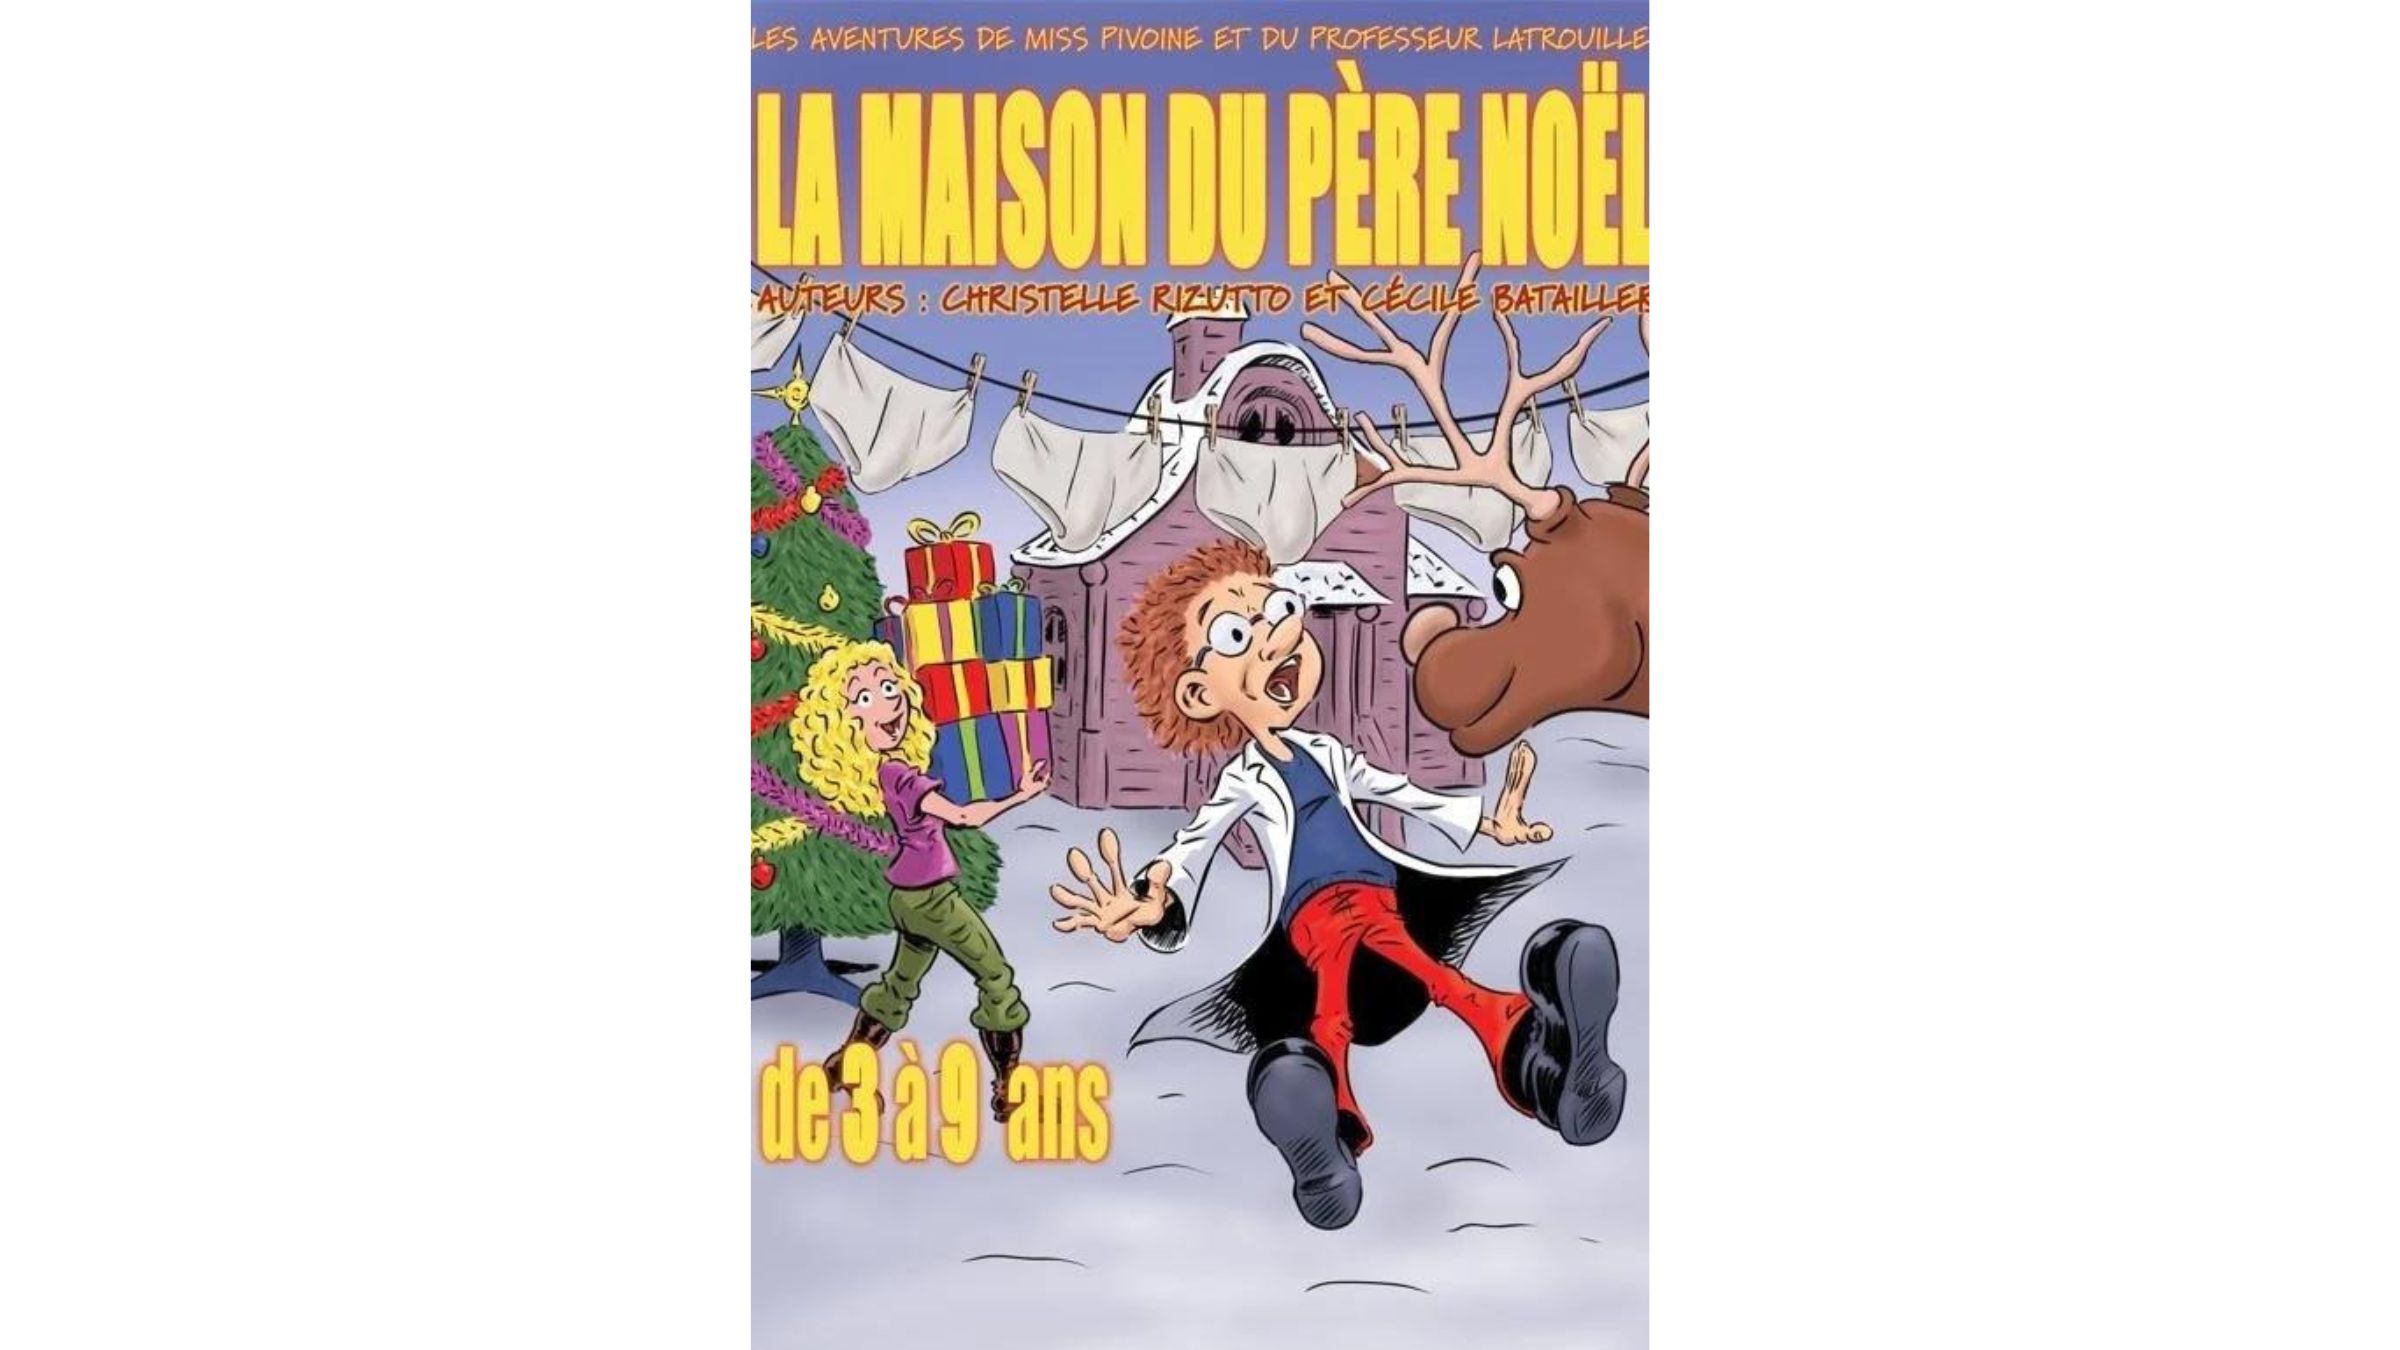 Les bons plans Noël 2023 de J'aime Dijon